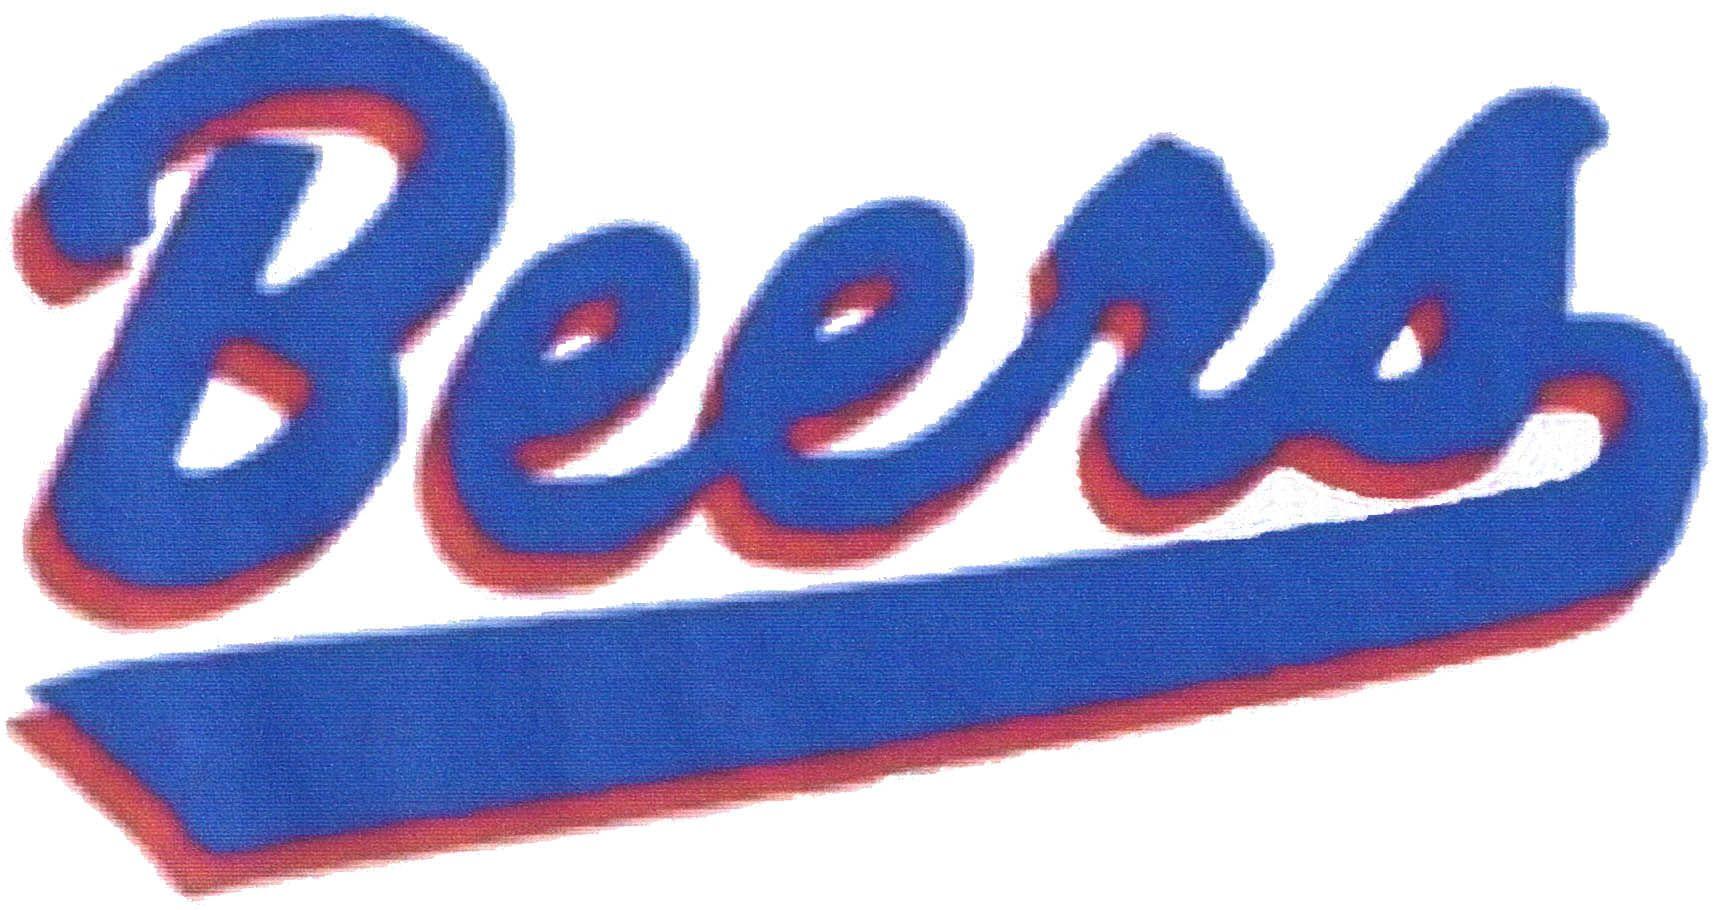 Beers Logo - Baseketball beers Logos